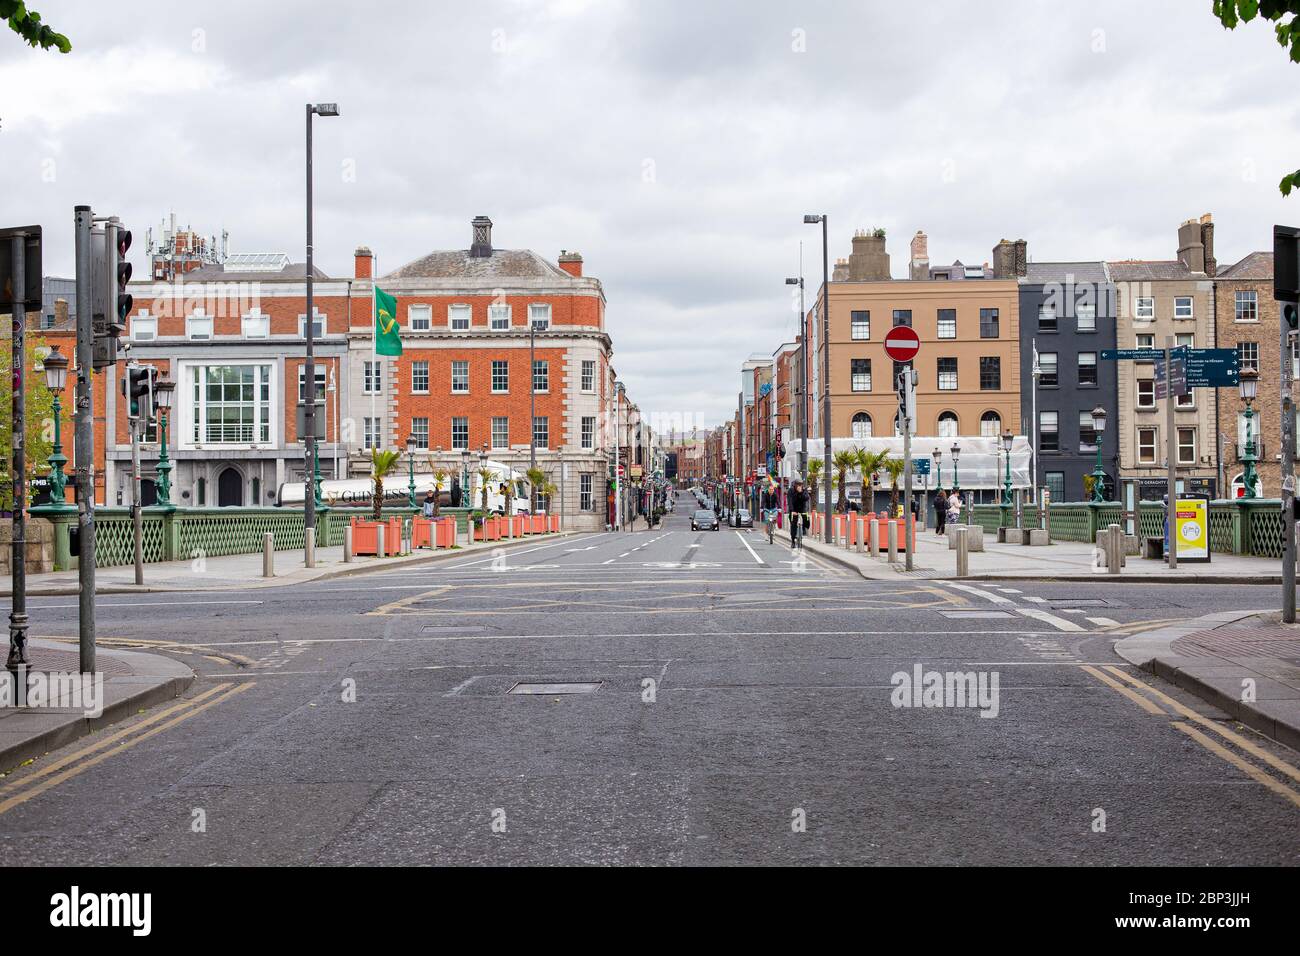 Dublin, Irland. Mai 2020. Begrenzte Anzahl und Verkehr im Stadtzentrum von Dublin und Geschäfte und Geschäfte wegen Covid-19 Pandemiebeschränkungen geschlossen. Stockfoto